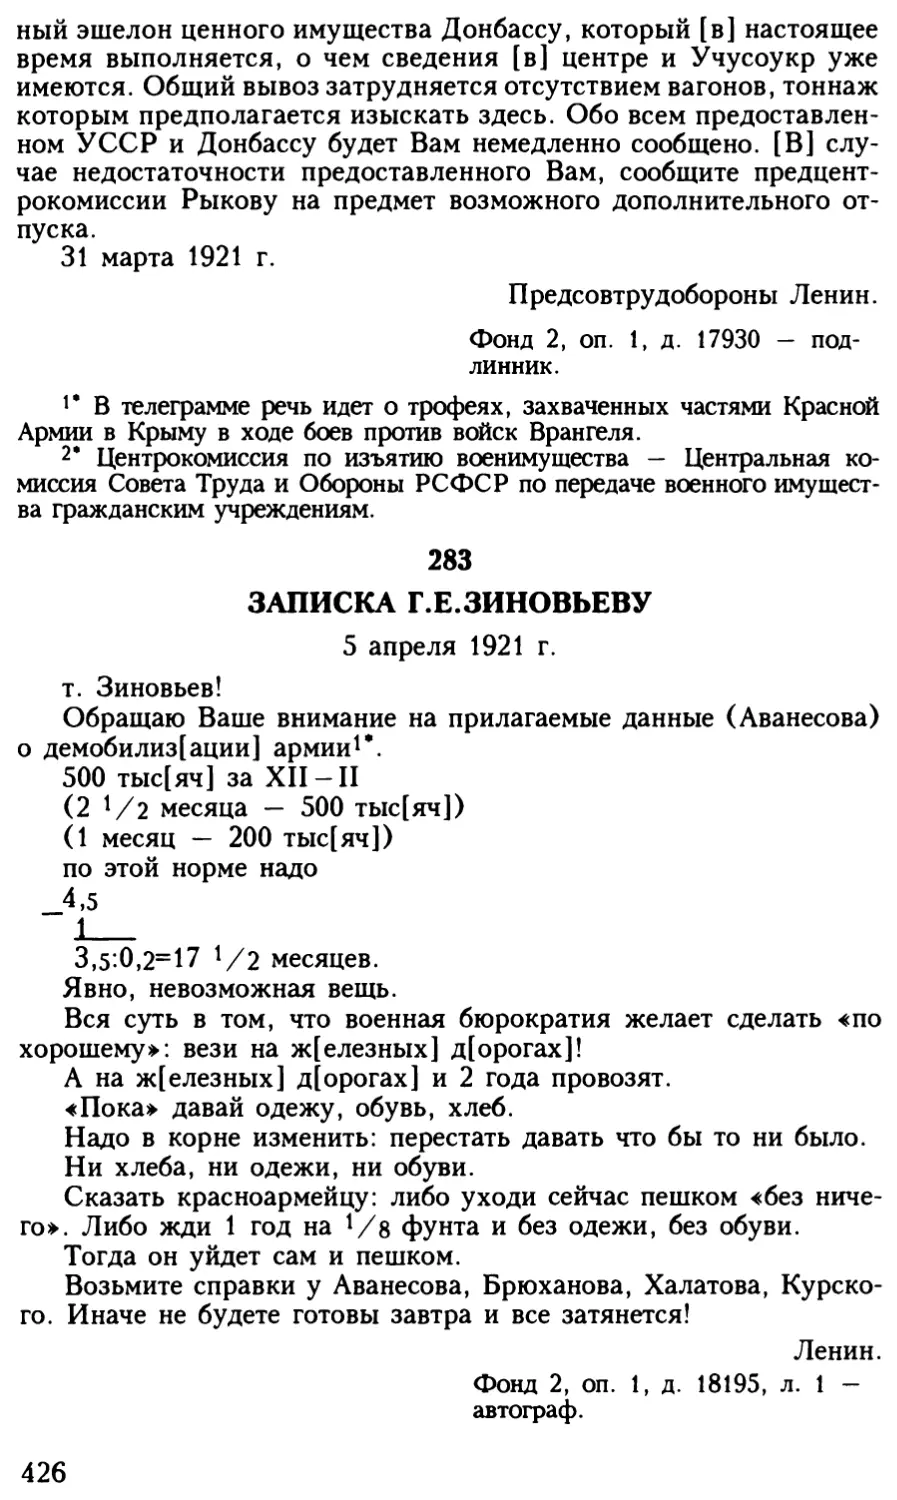 283. Записка Г.Е.Зиновьеву. 5 апреля 1921 г